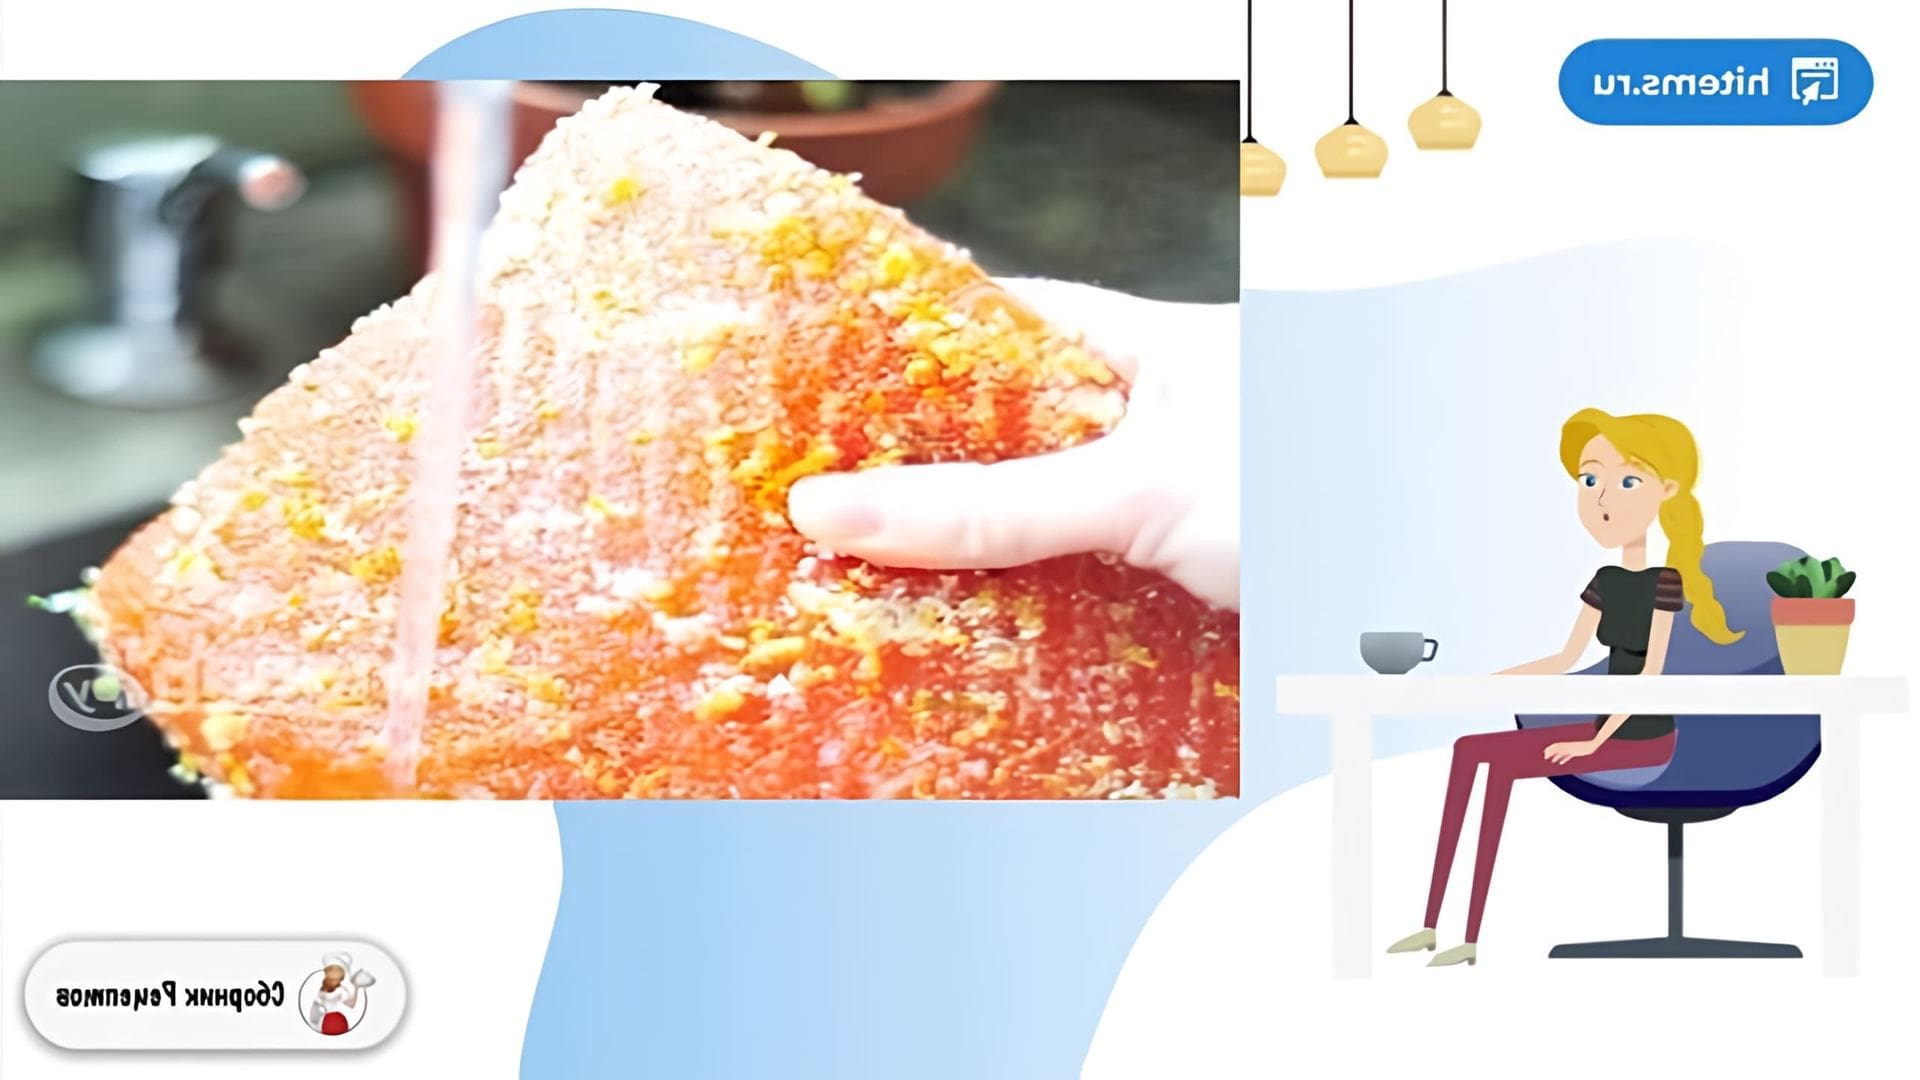 В этом видео демонстрируется процесс приготовления слабосоленой семги в домашних условиях